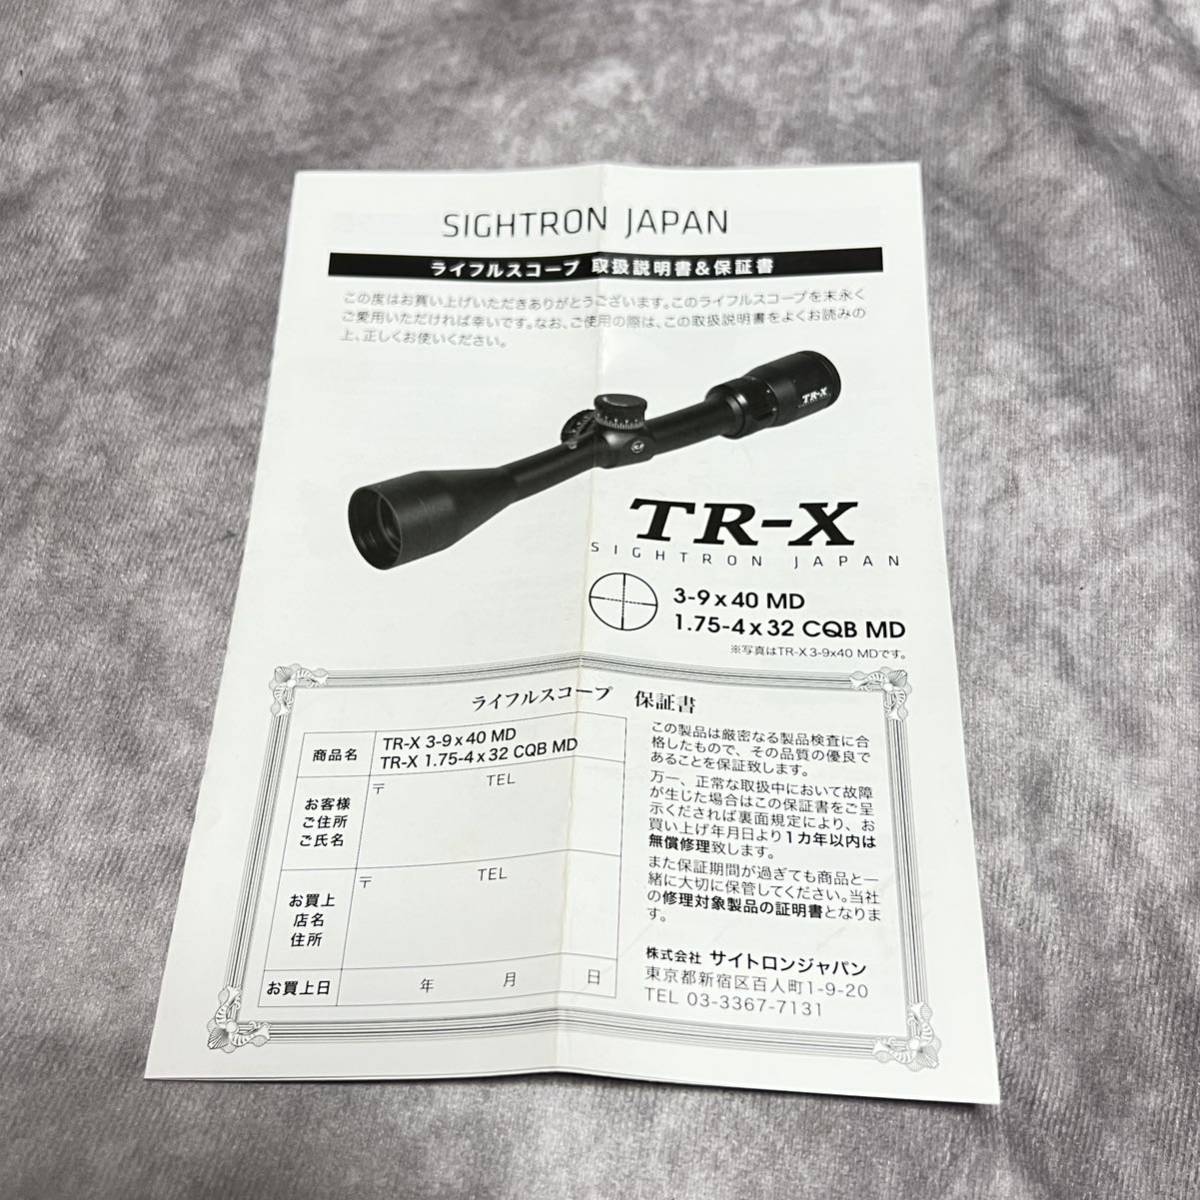 サイトロンジャパン製TR-X 1.75-4x32 CQB MD ライフルスコープ (パーツ